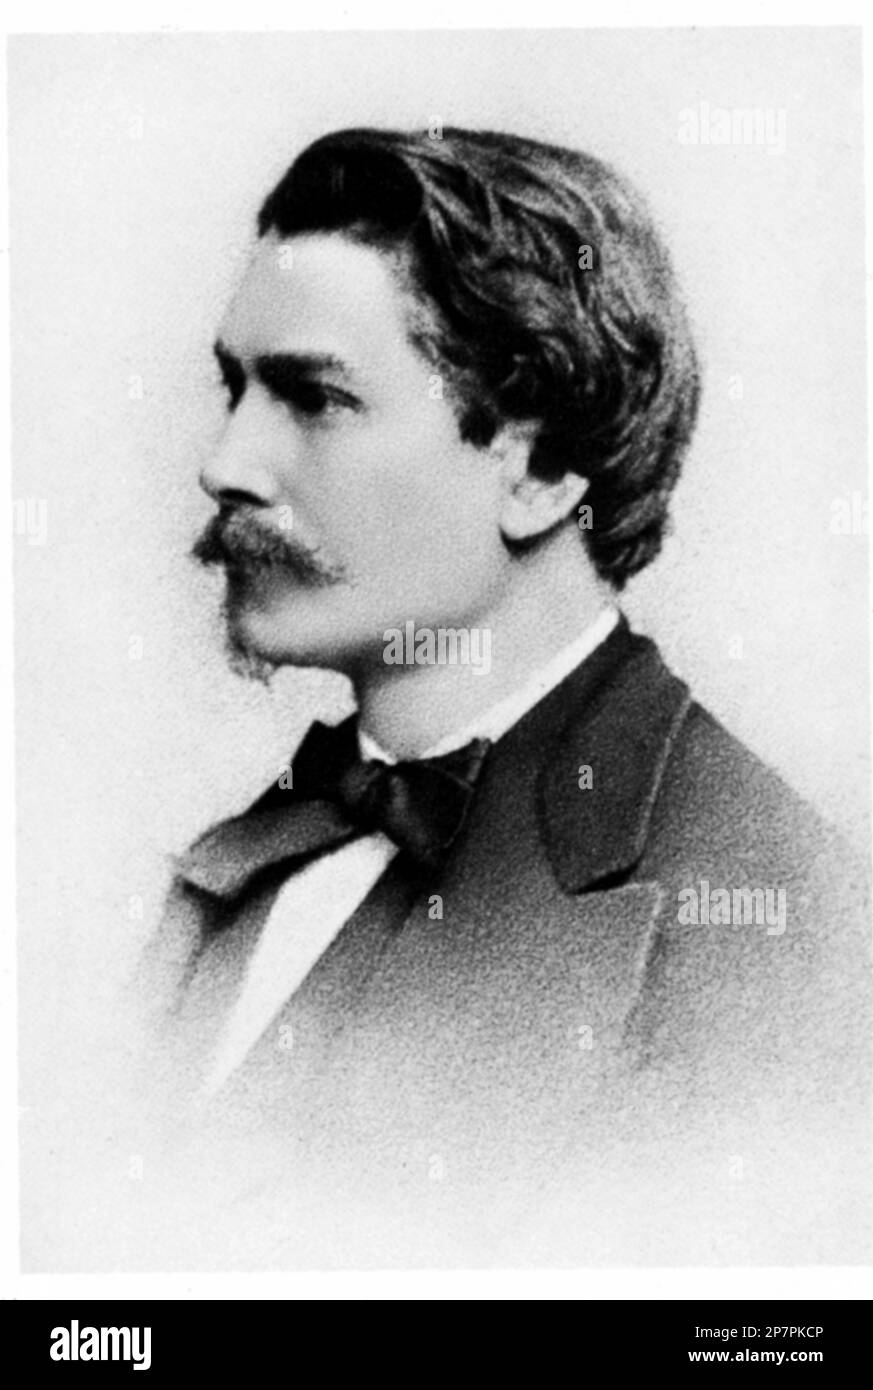 1905 c, FRANKREICH : der französische Komponist und Pianist CHARLES-WILFRIDE DE BERIOT ( 1883 - 1914 ), Schüler von Thalberg . - COMPOSITORE - OPERA LIRICA - CLASSICA - KLASSISCH - PORTRAIT - RITRATTO - MUSICISTA - MUSICA - CRAVATTA - KRAWATTE - Kragen - colletto - papillon - Baffi - Schnurrbart --- - ARCHIVIO GBB Stockfoto